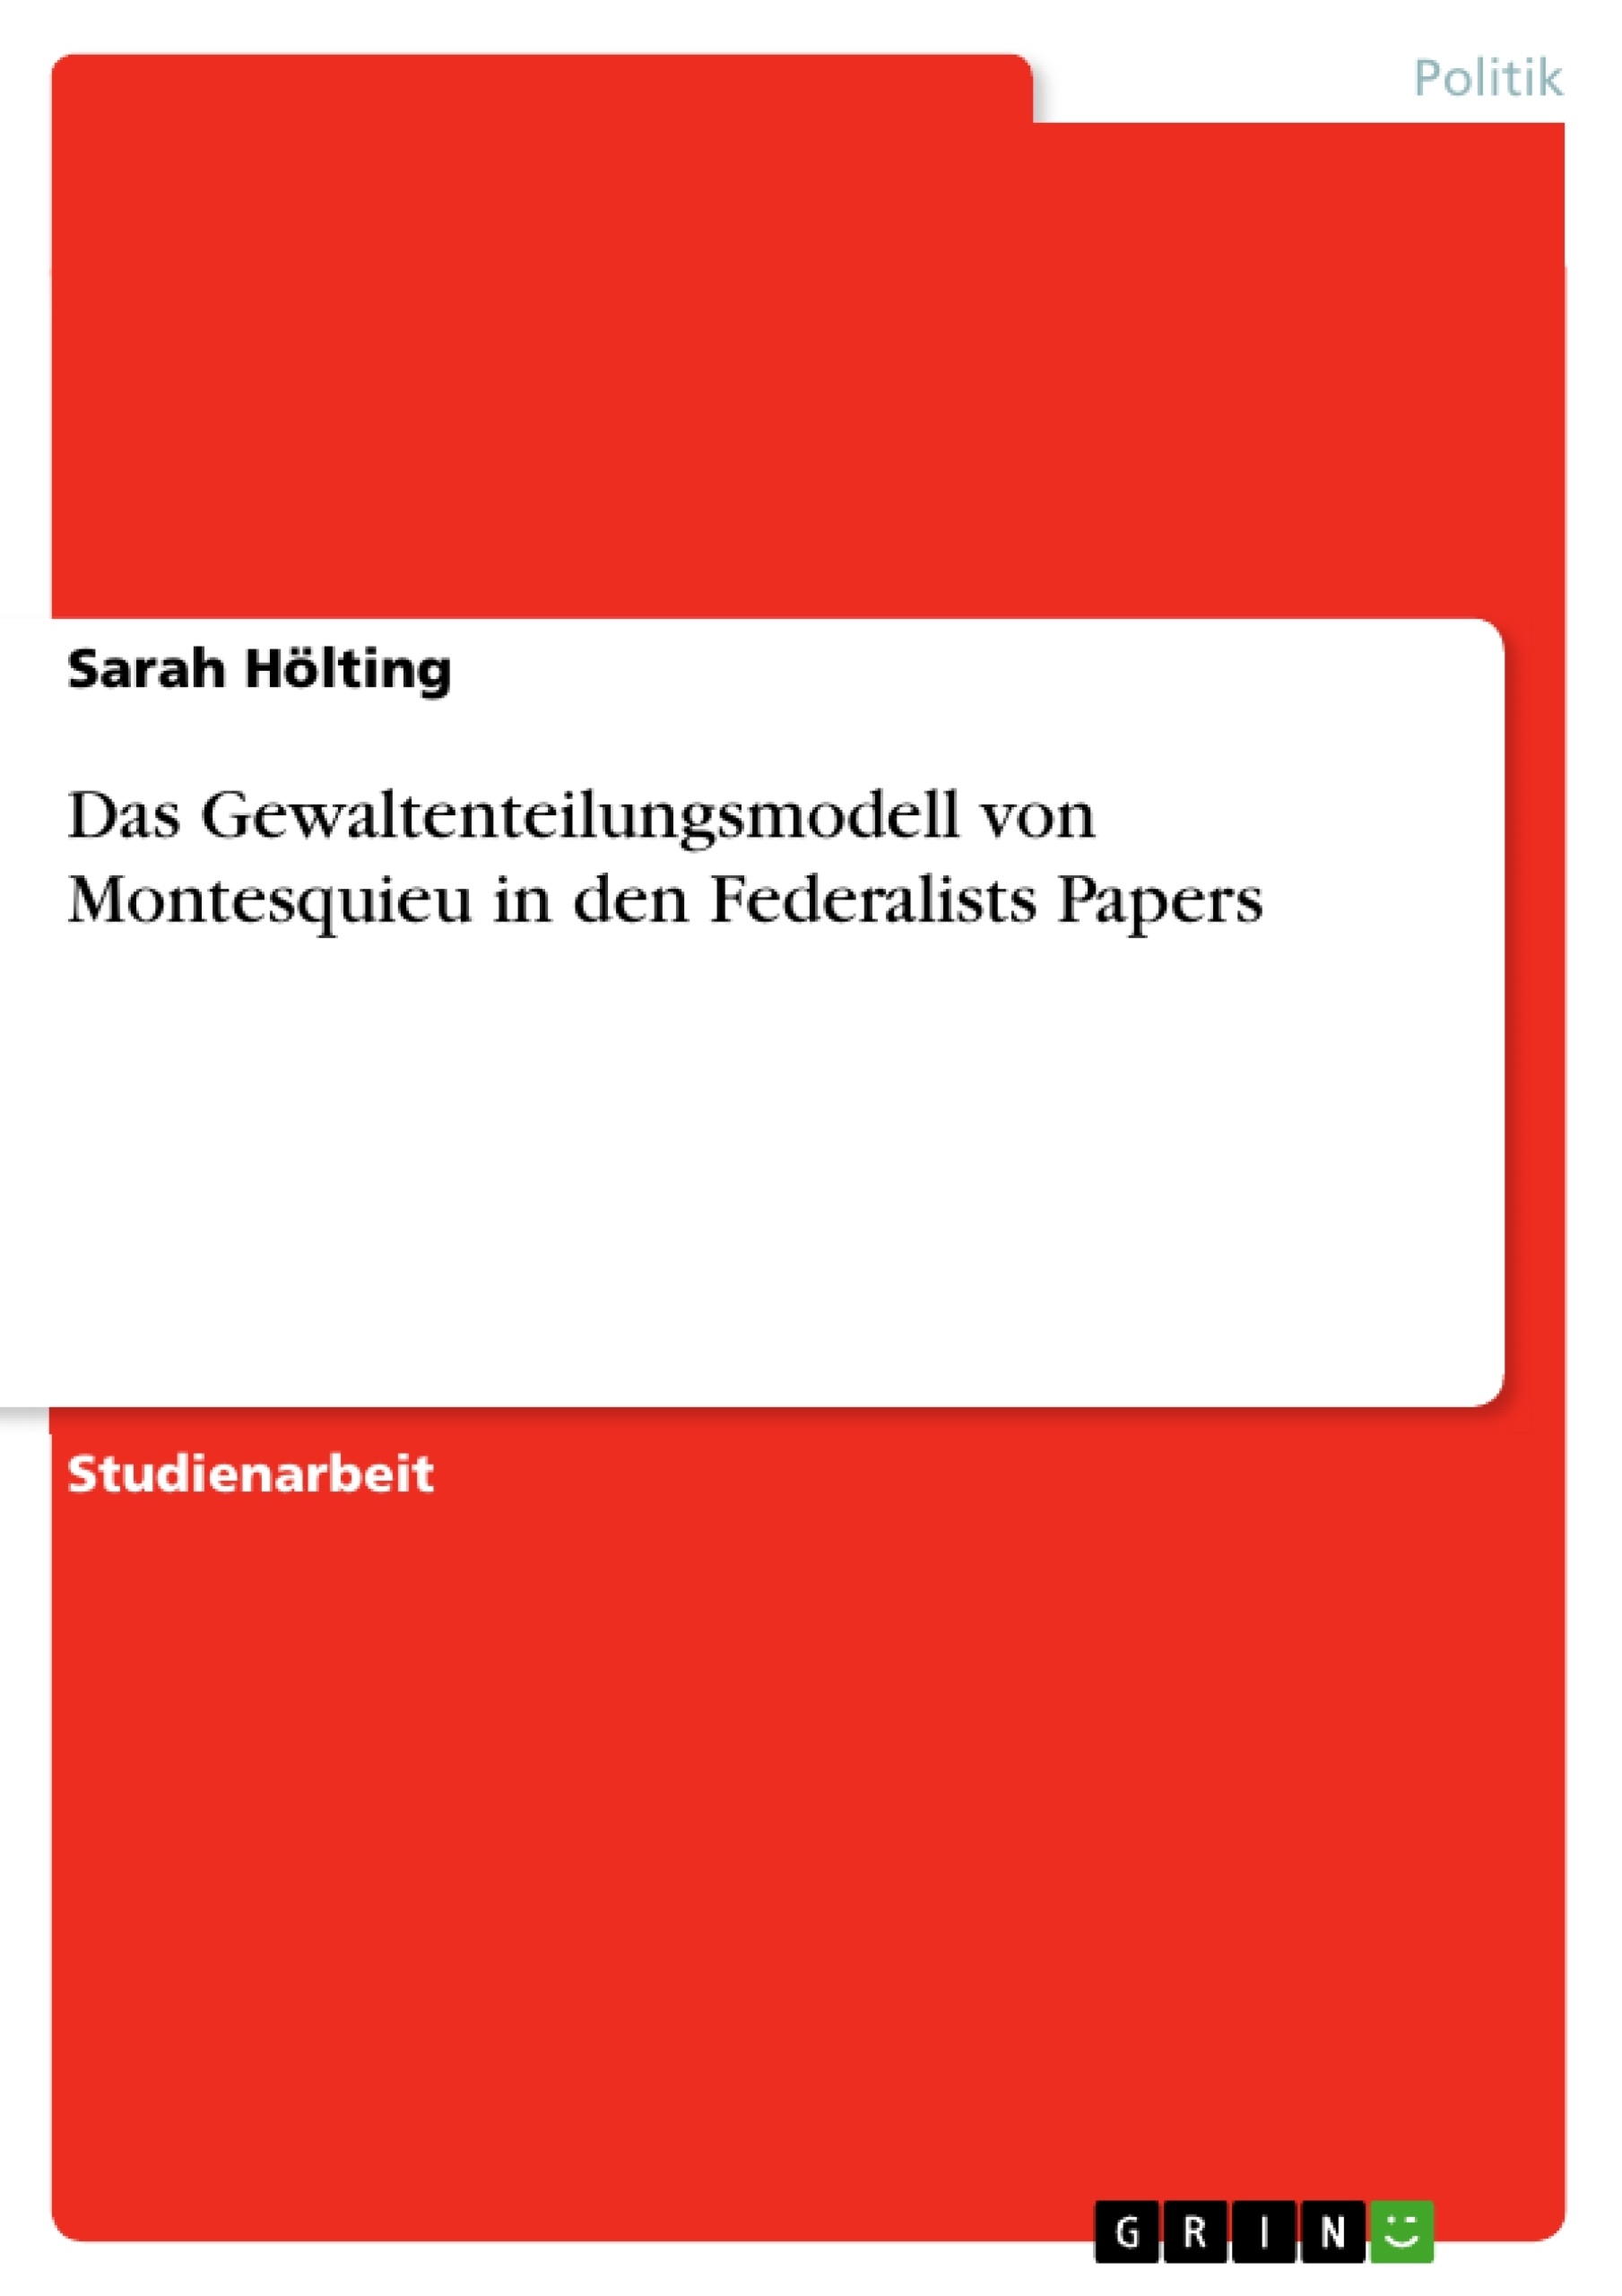 Título: Das Gewaltenteilungsmodell von Montesquieu in den Federalists Papers